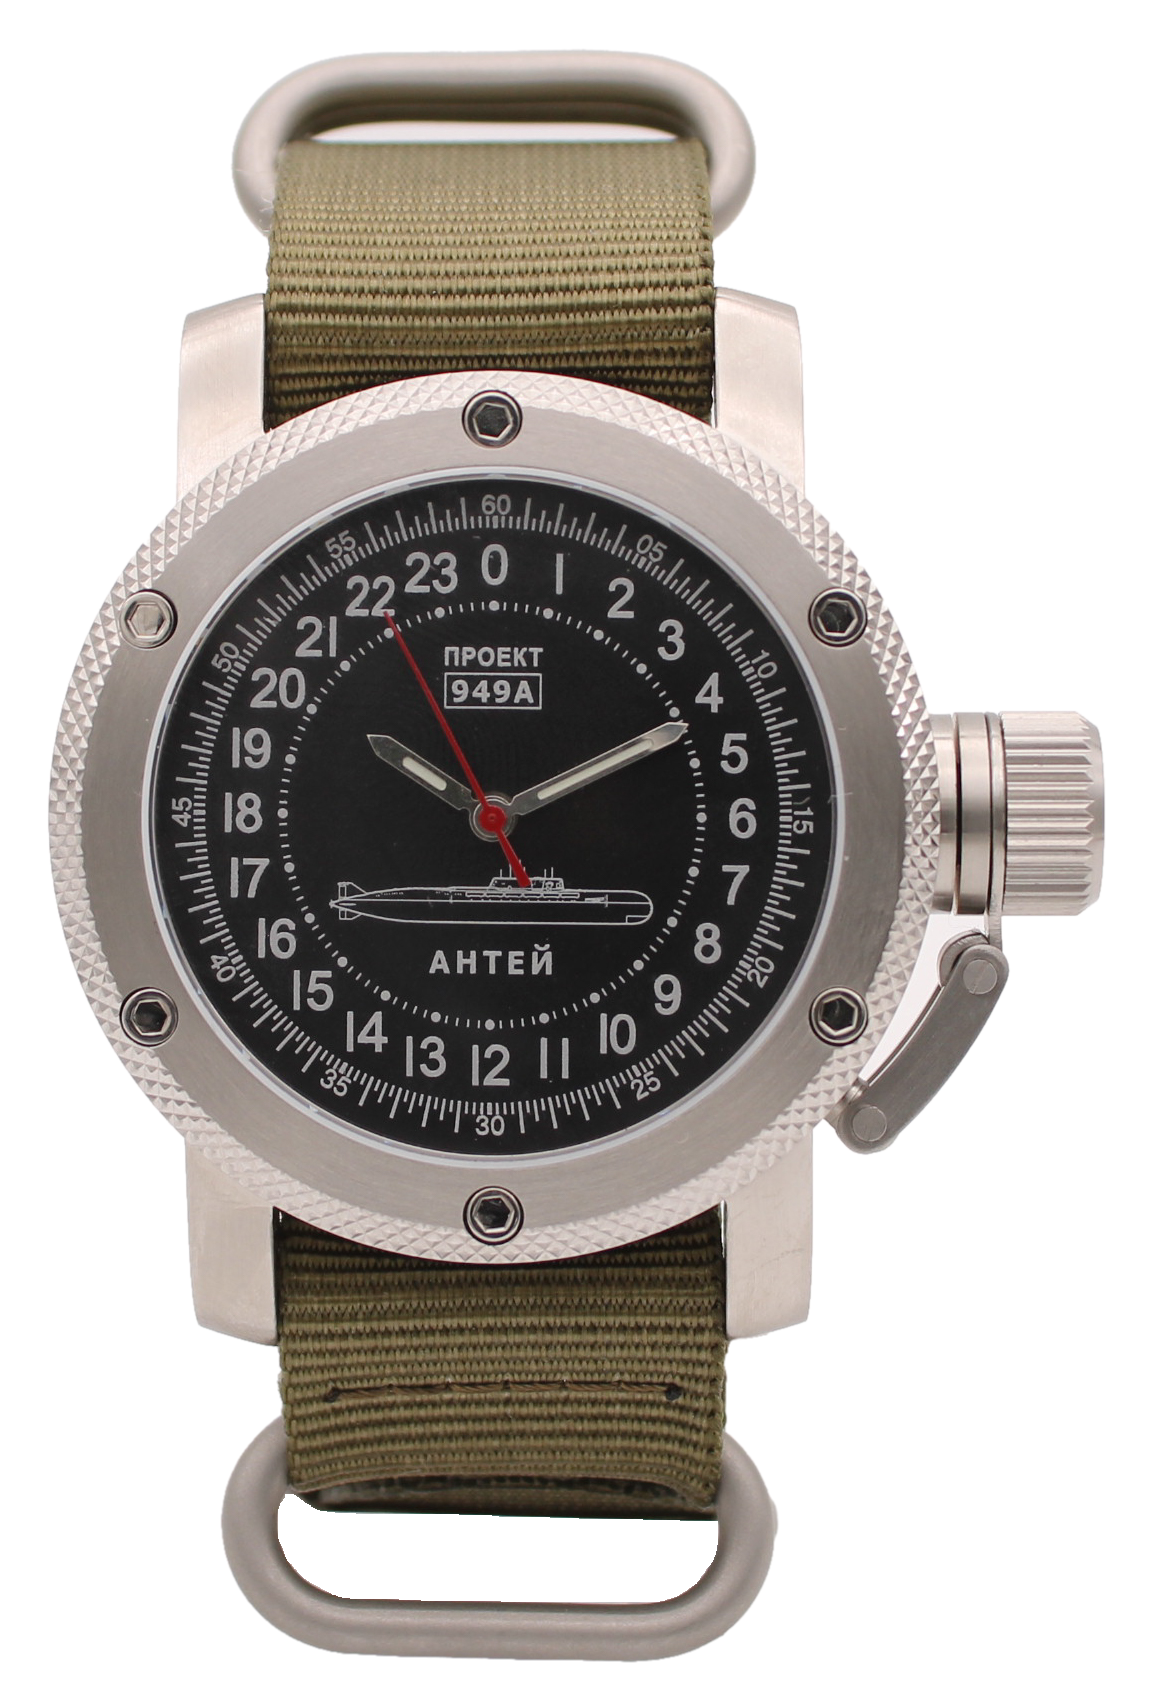 фото Наручные часы мужские watch triumph 03.11.047.11.21 хаки